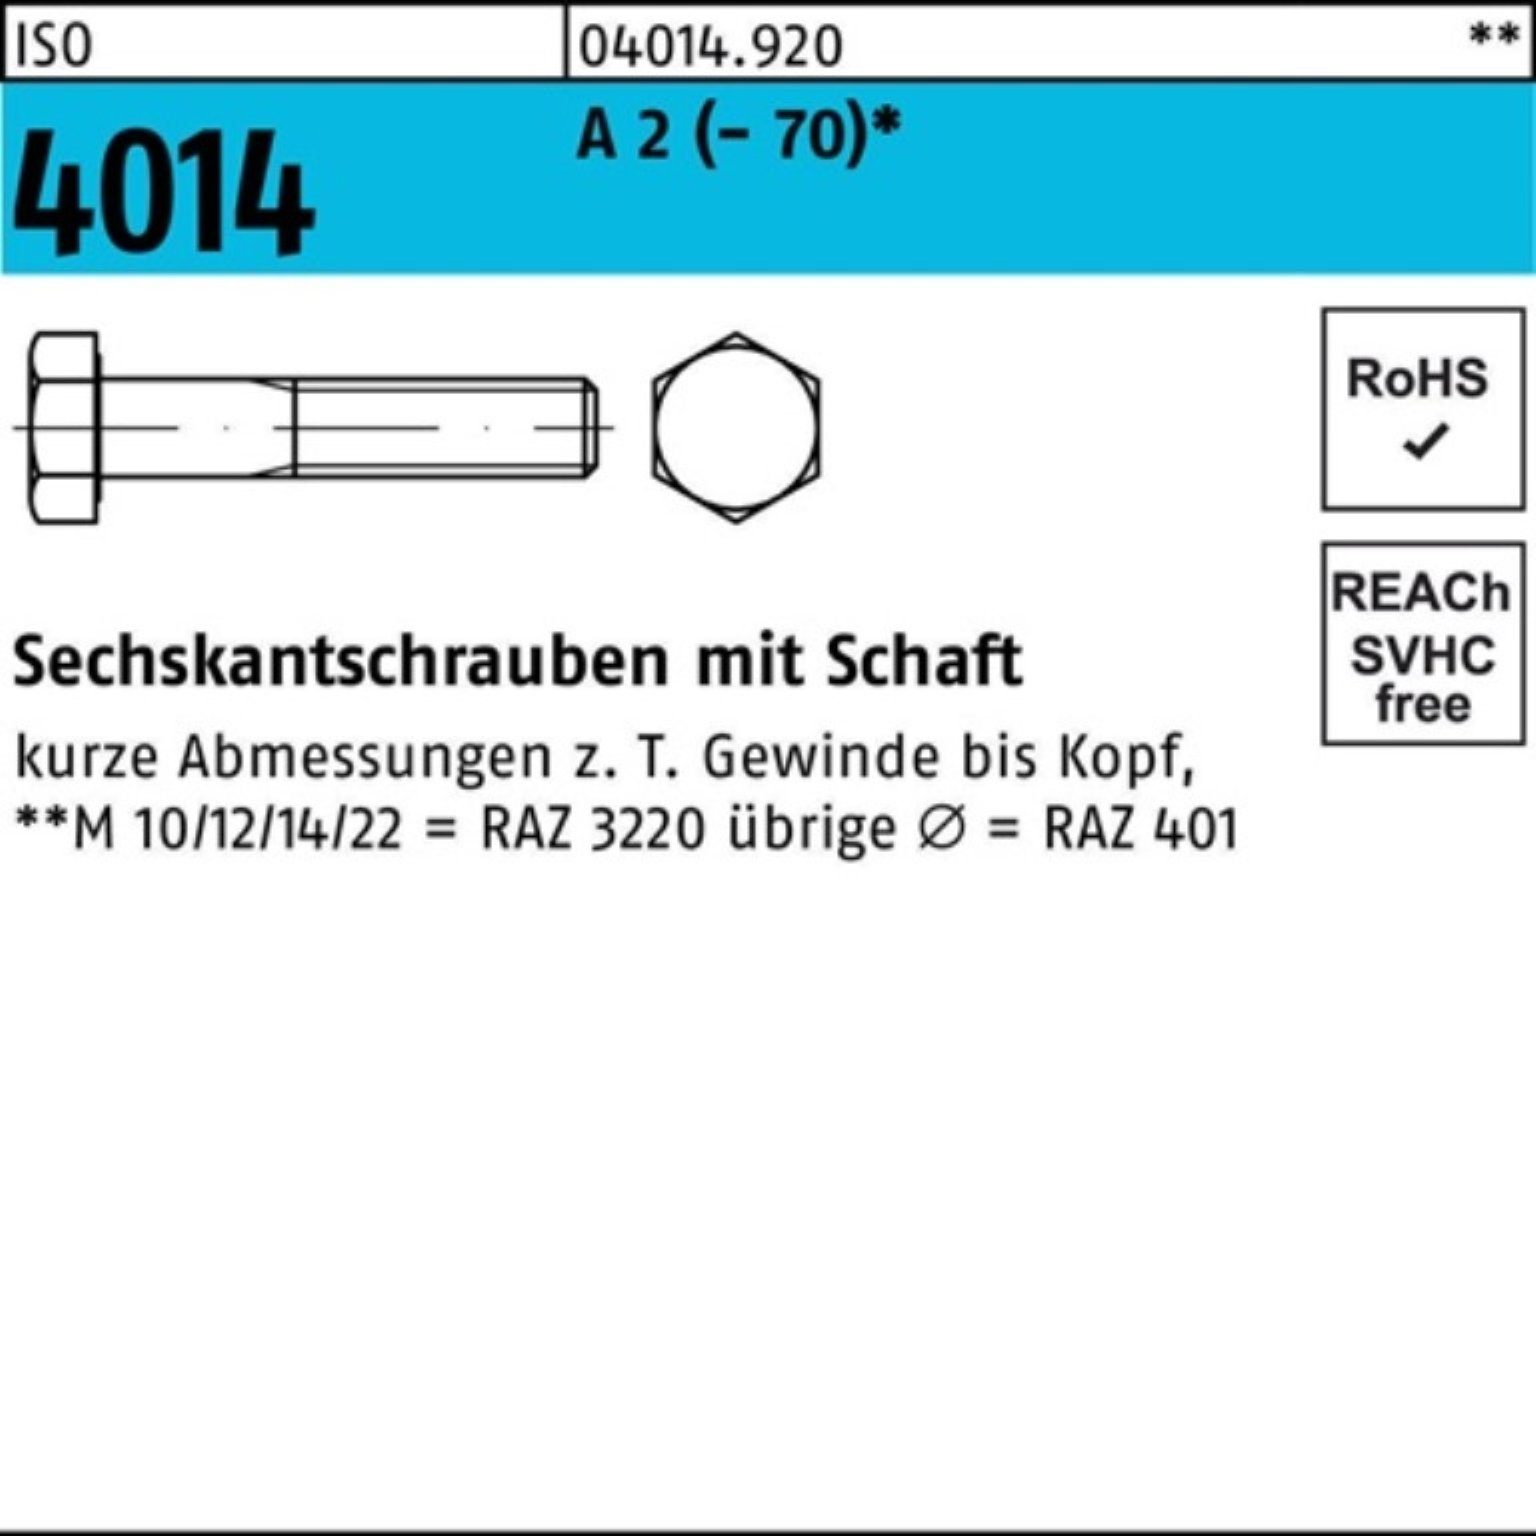 Bufab Sechskantschraube Sechskantschraube A Schaft 1 110 4014 St 2 (70) 100er Pack ISO M27x